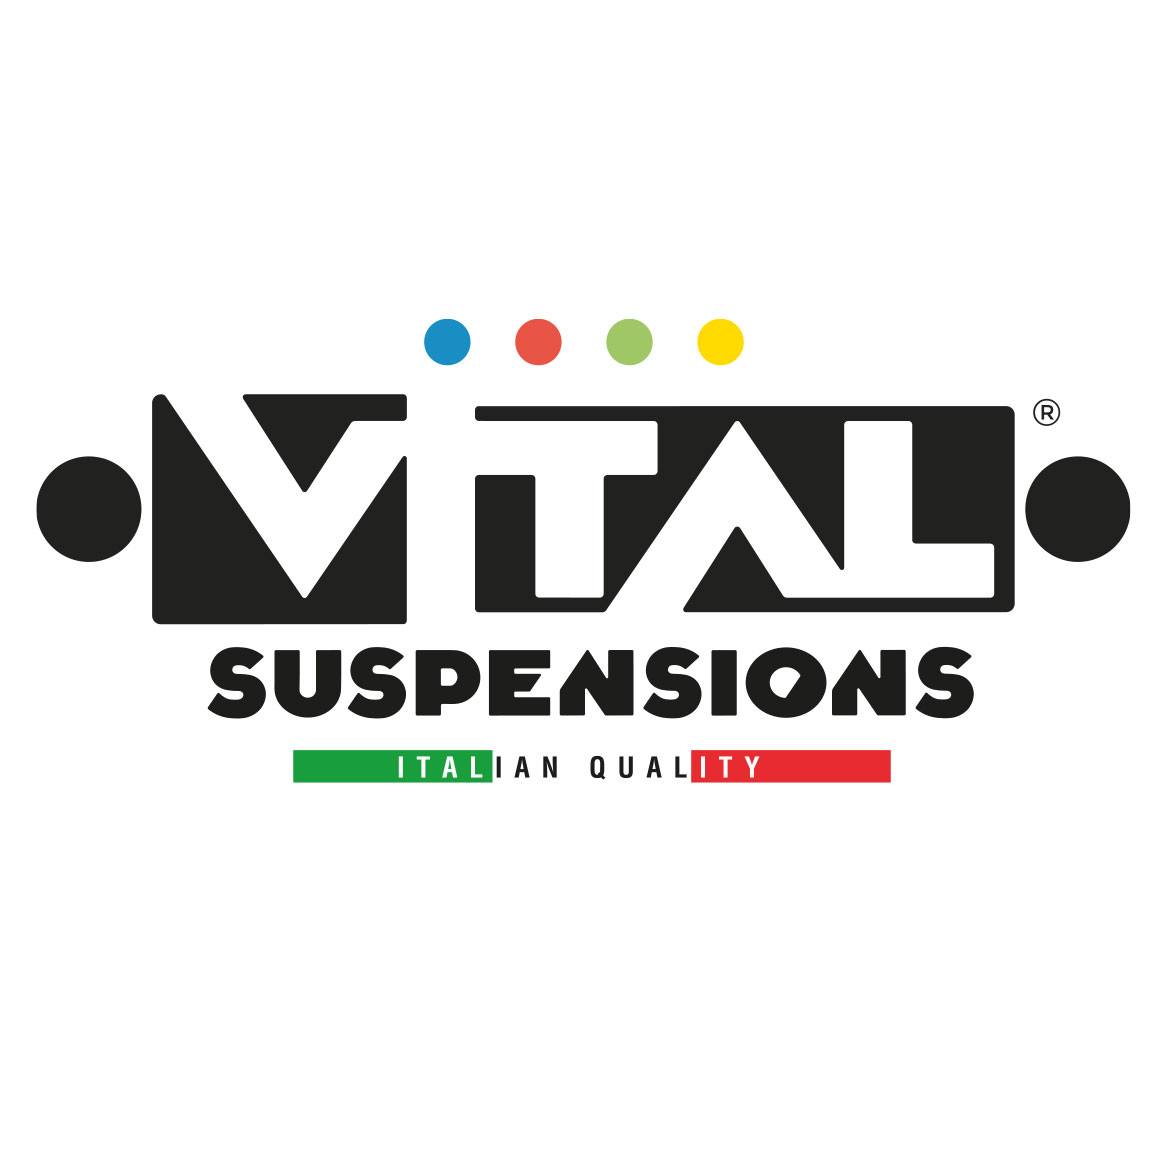 Vital suspensions